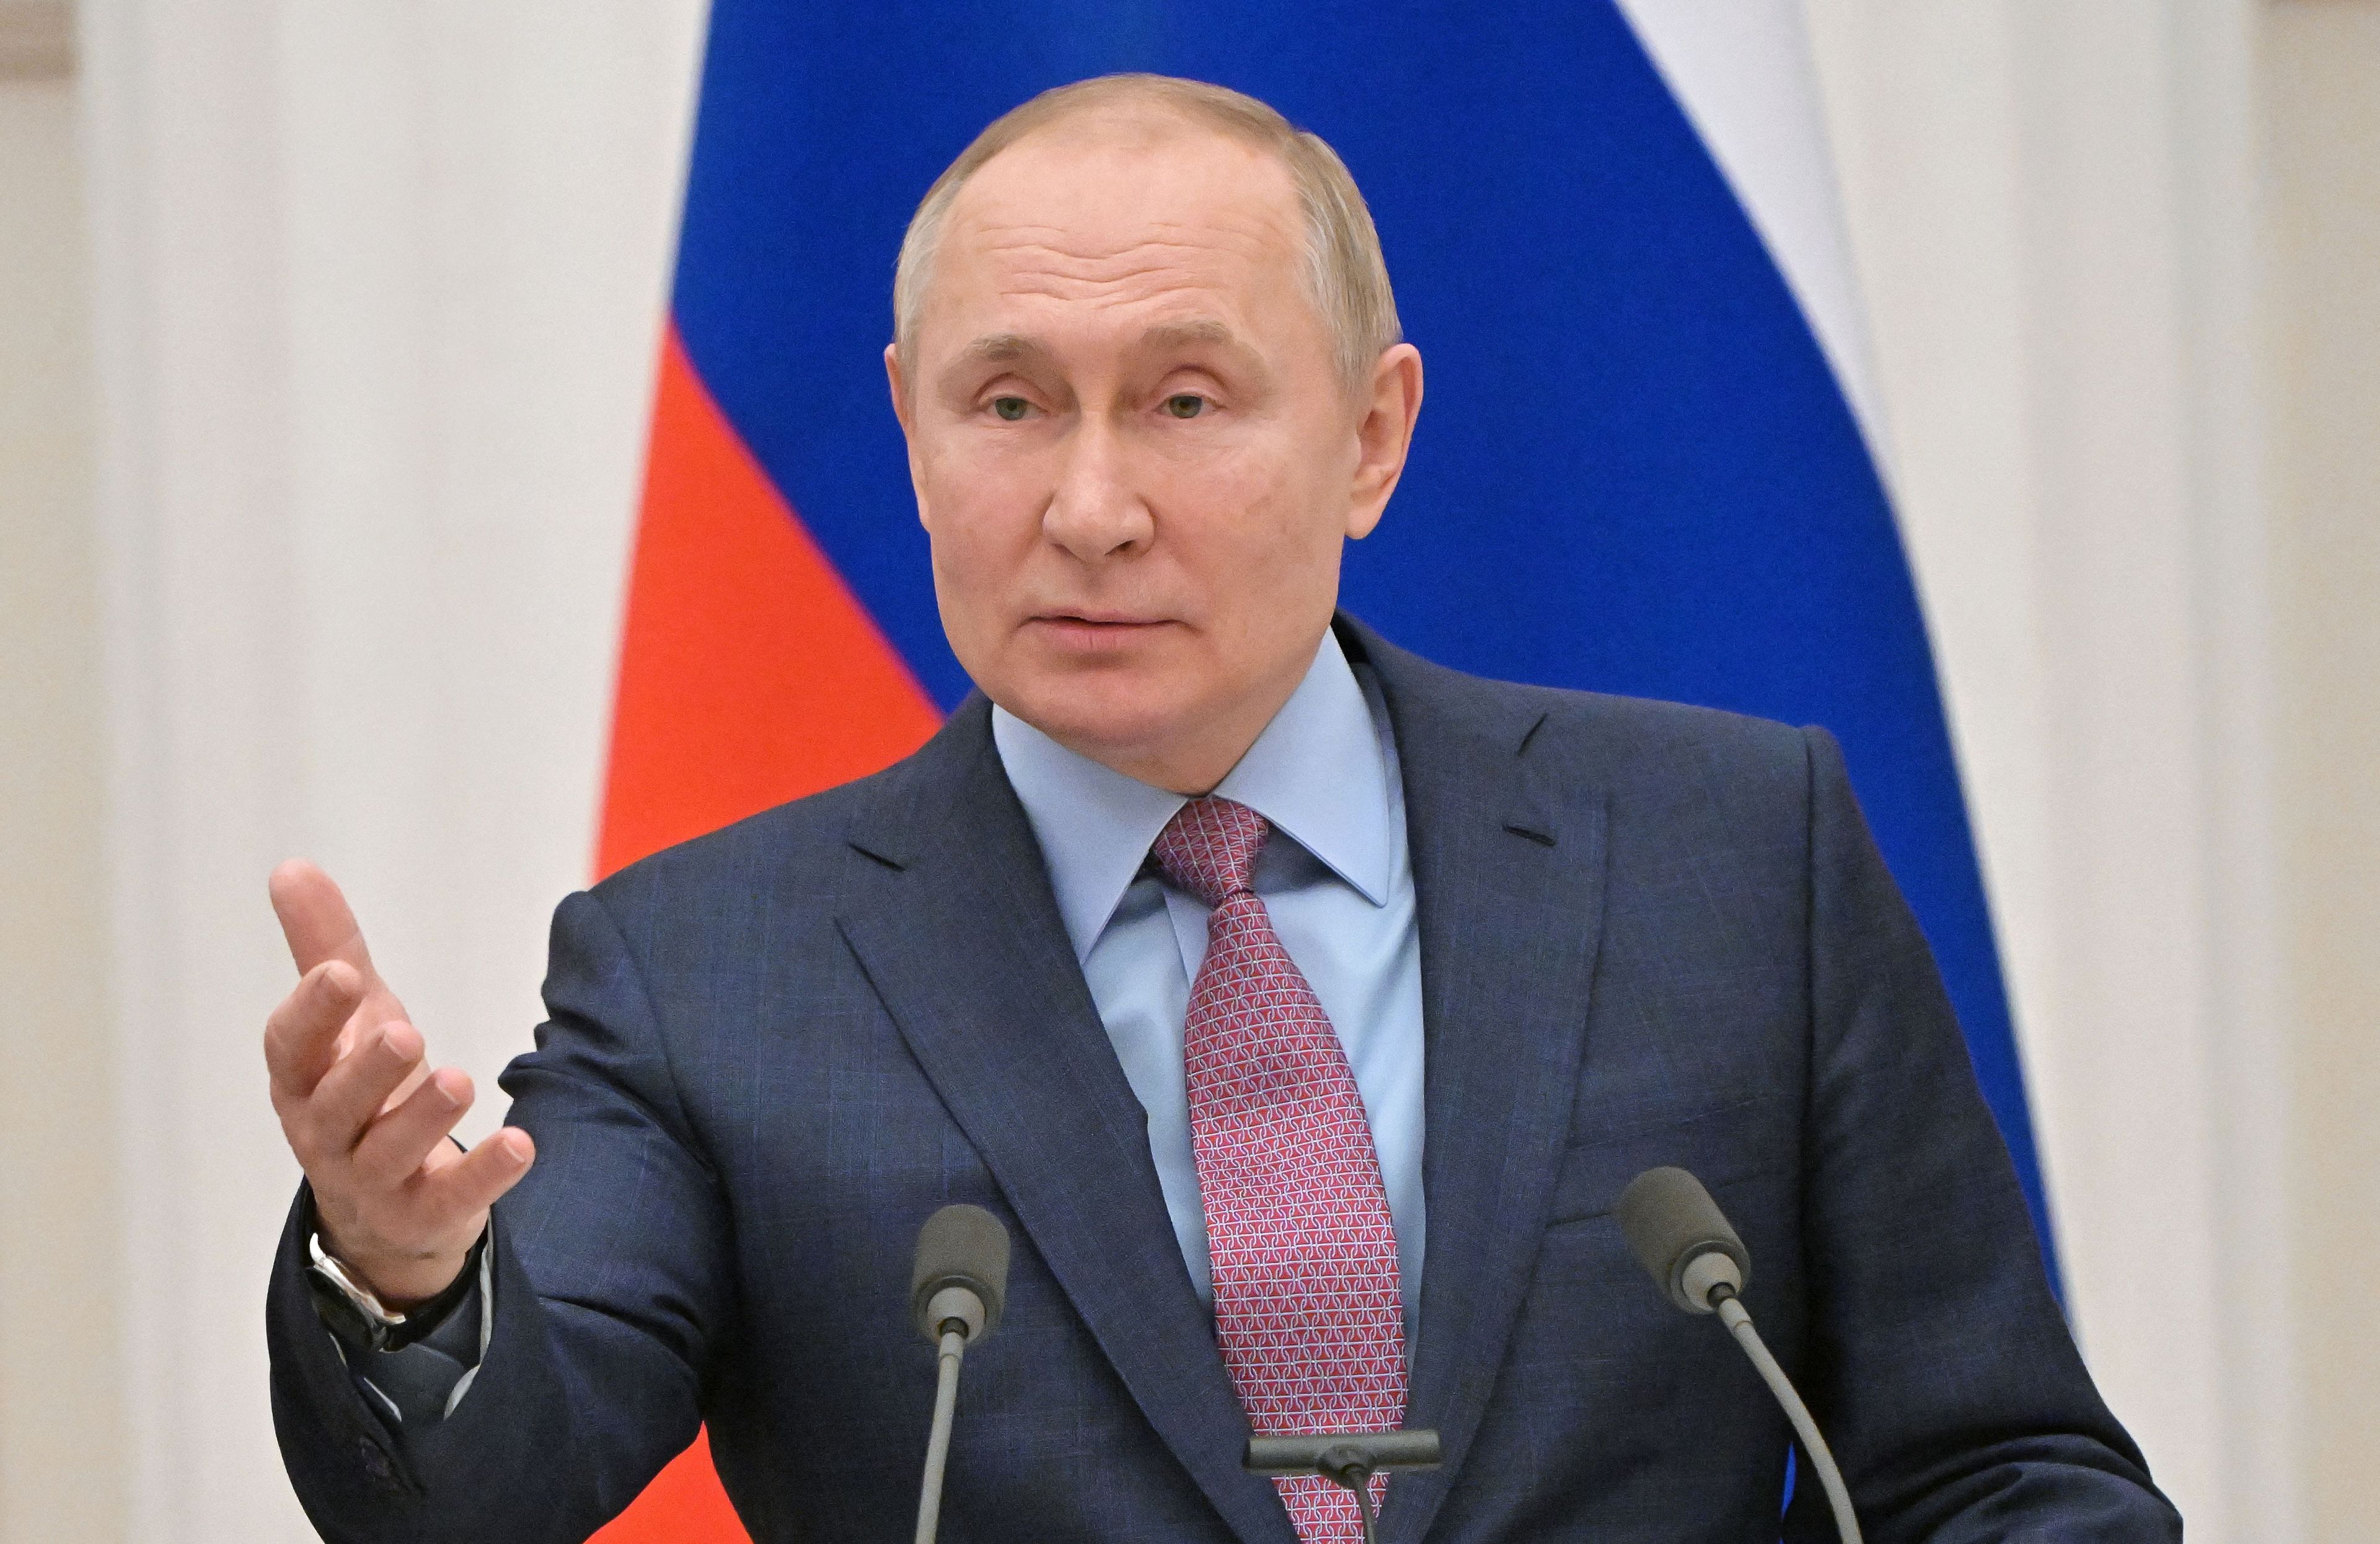 El presidente de Rusia, Vladimir Putin, gesticula mientras habla durante una rueda de prensa con su homólogo bielorruso, tras sus conversaciones en el Kremlin en Moscú el 18 de febrero de 2022.